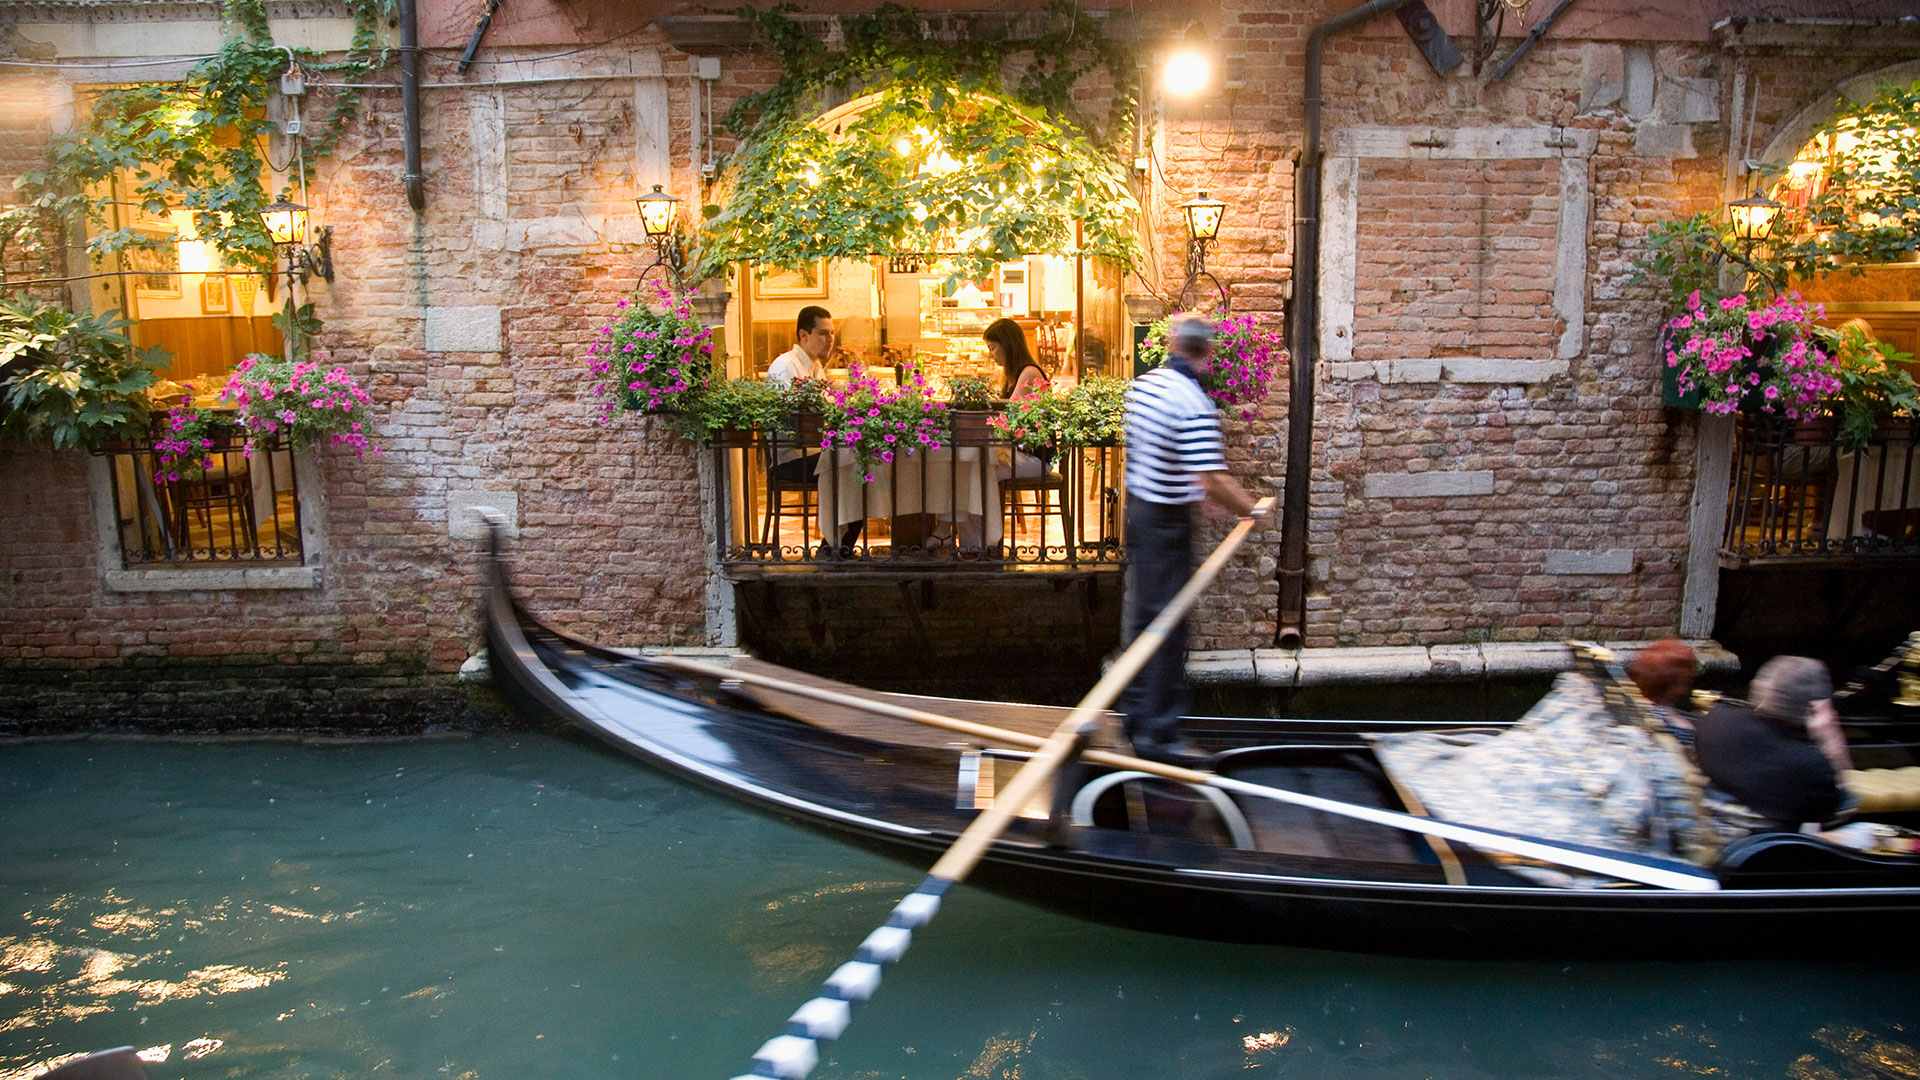 El turismo de masas lleva mucho tiempo afligiendo a Venecia, con una proporción de 370 visitantes por cada residente al año